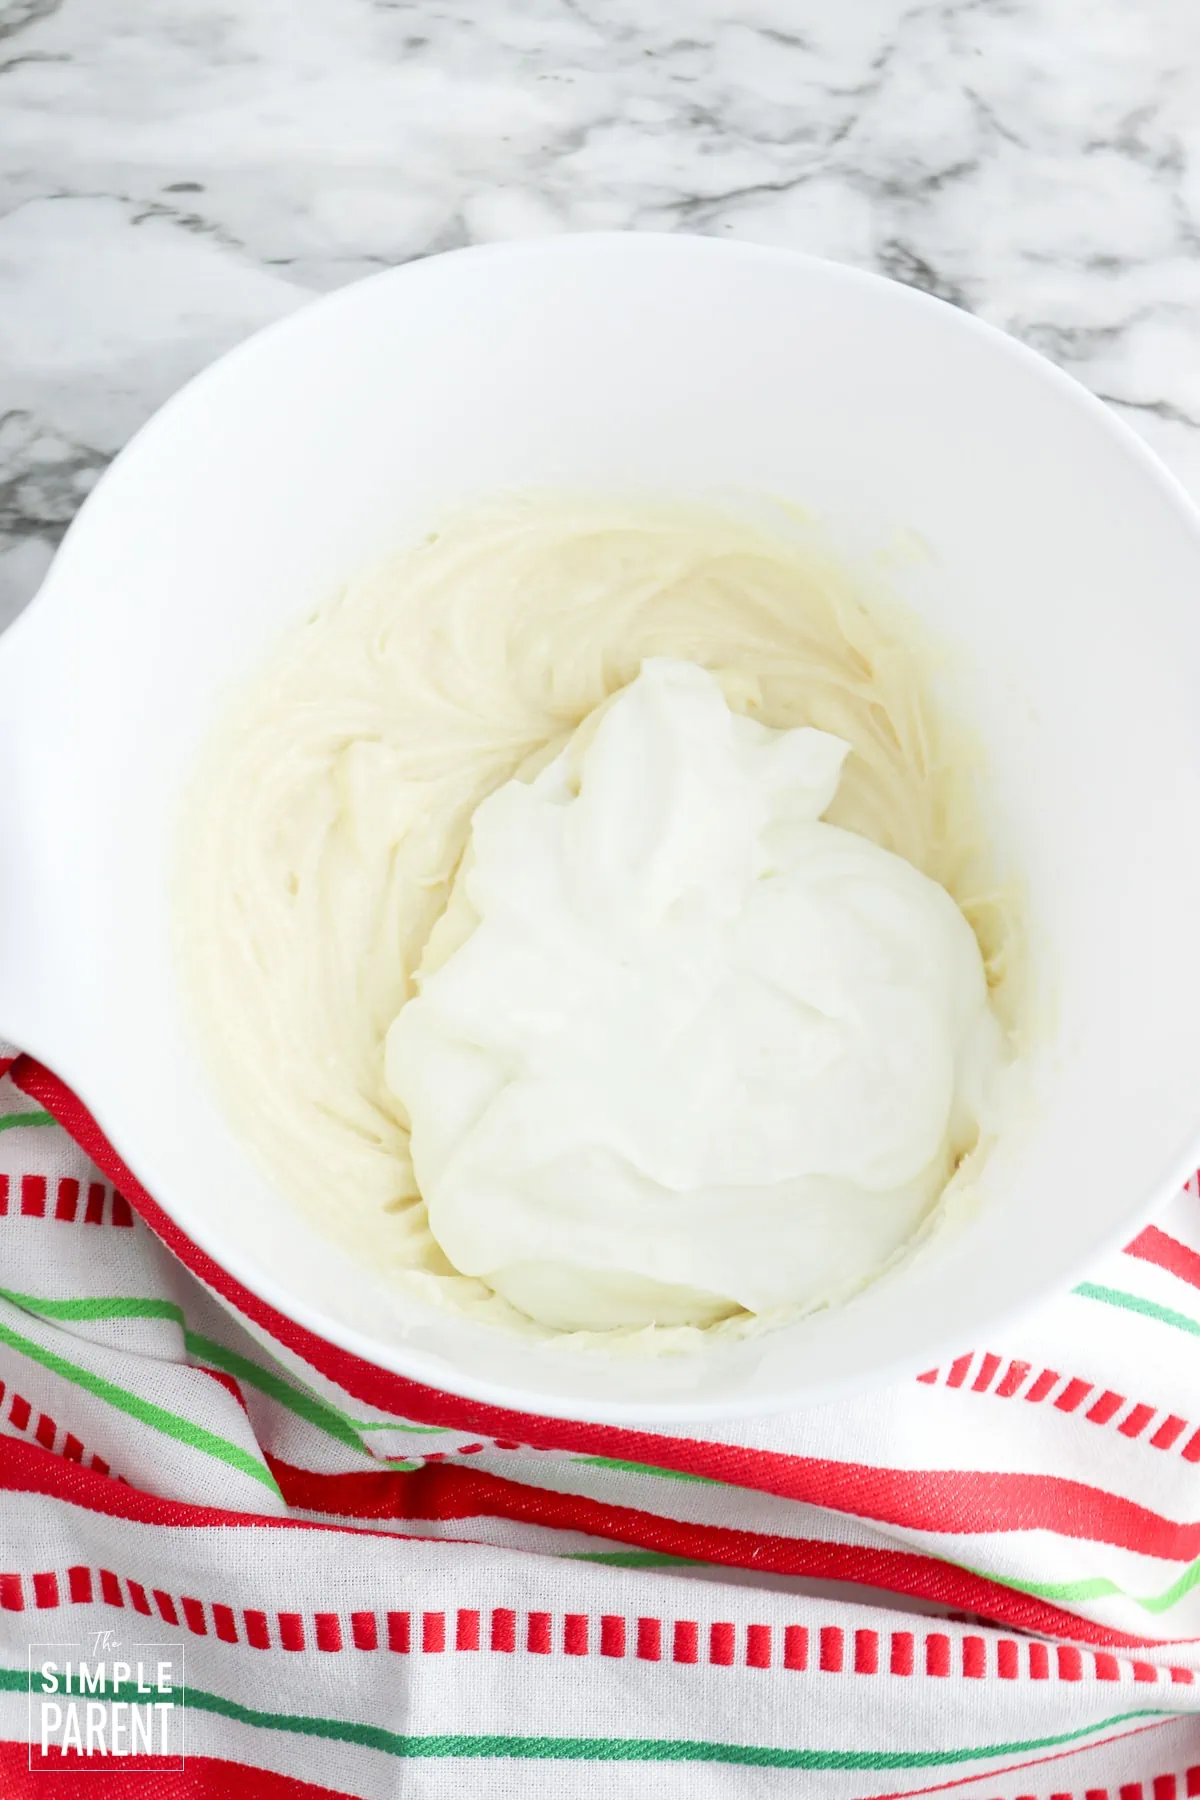 Greek yogurt and cookie dip in a bowl